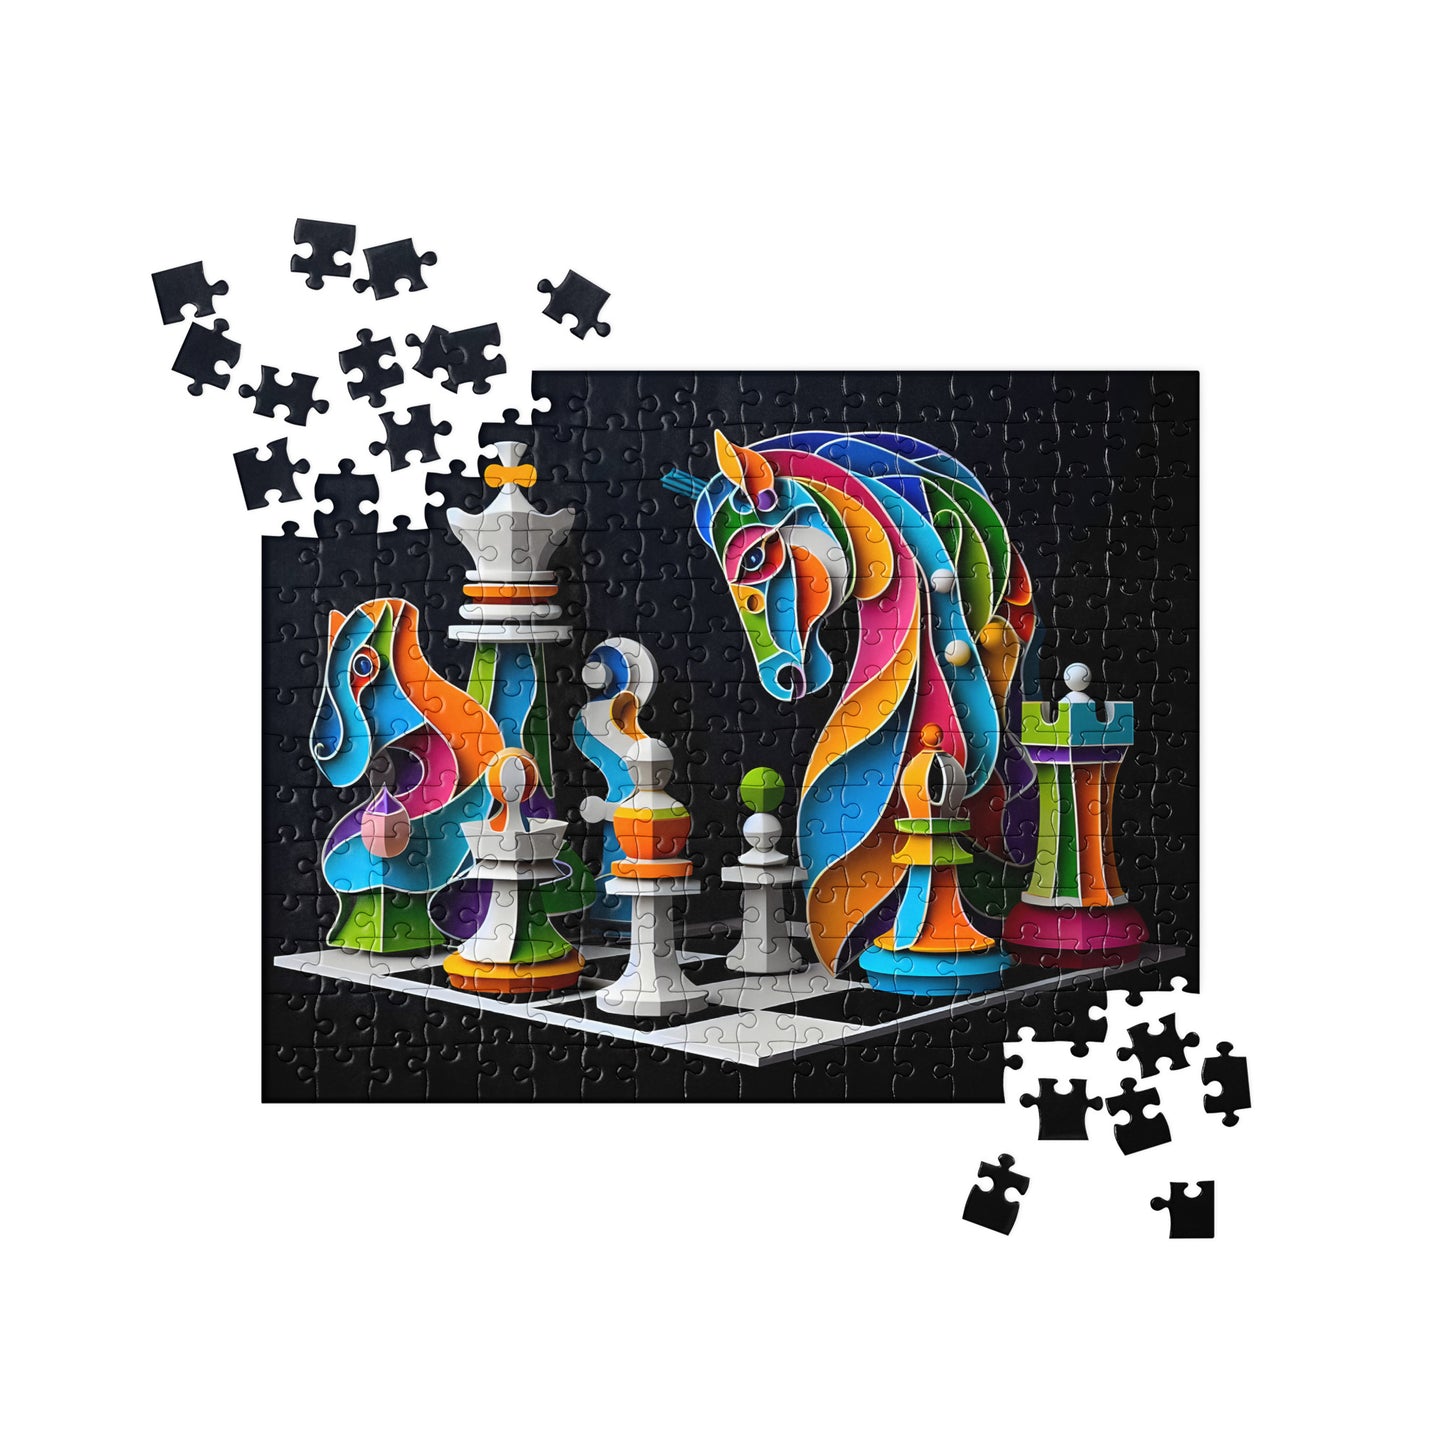 3D Chess Art - Jigsaw Puzzle #3